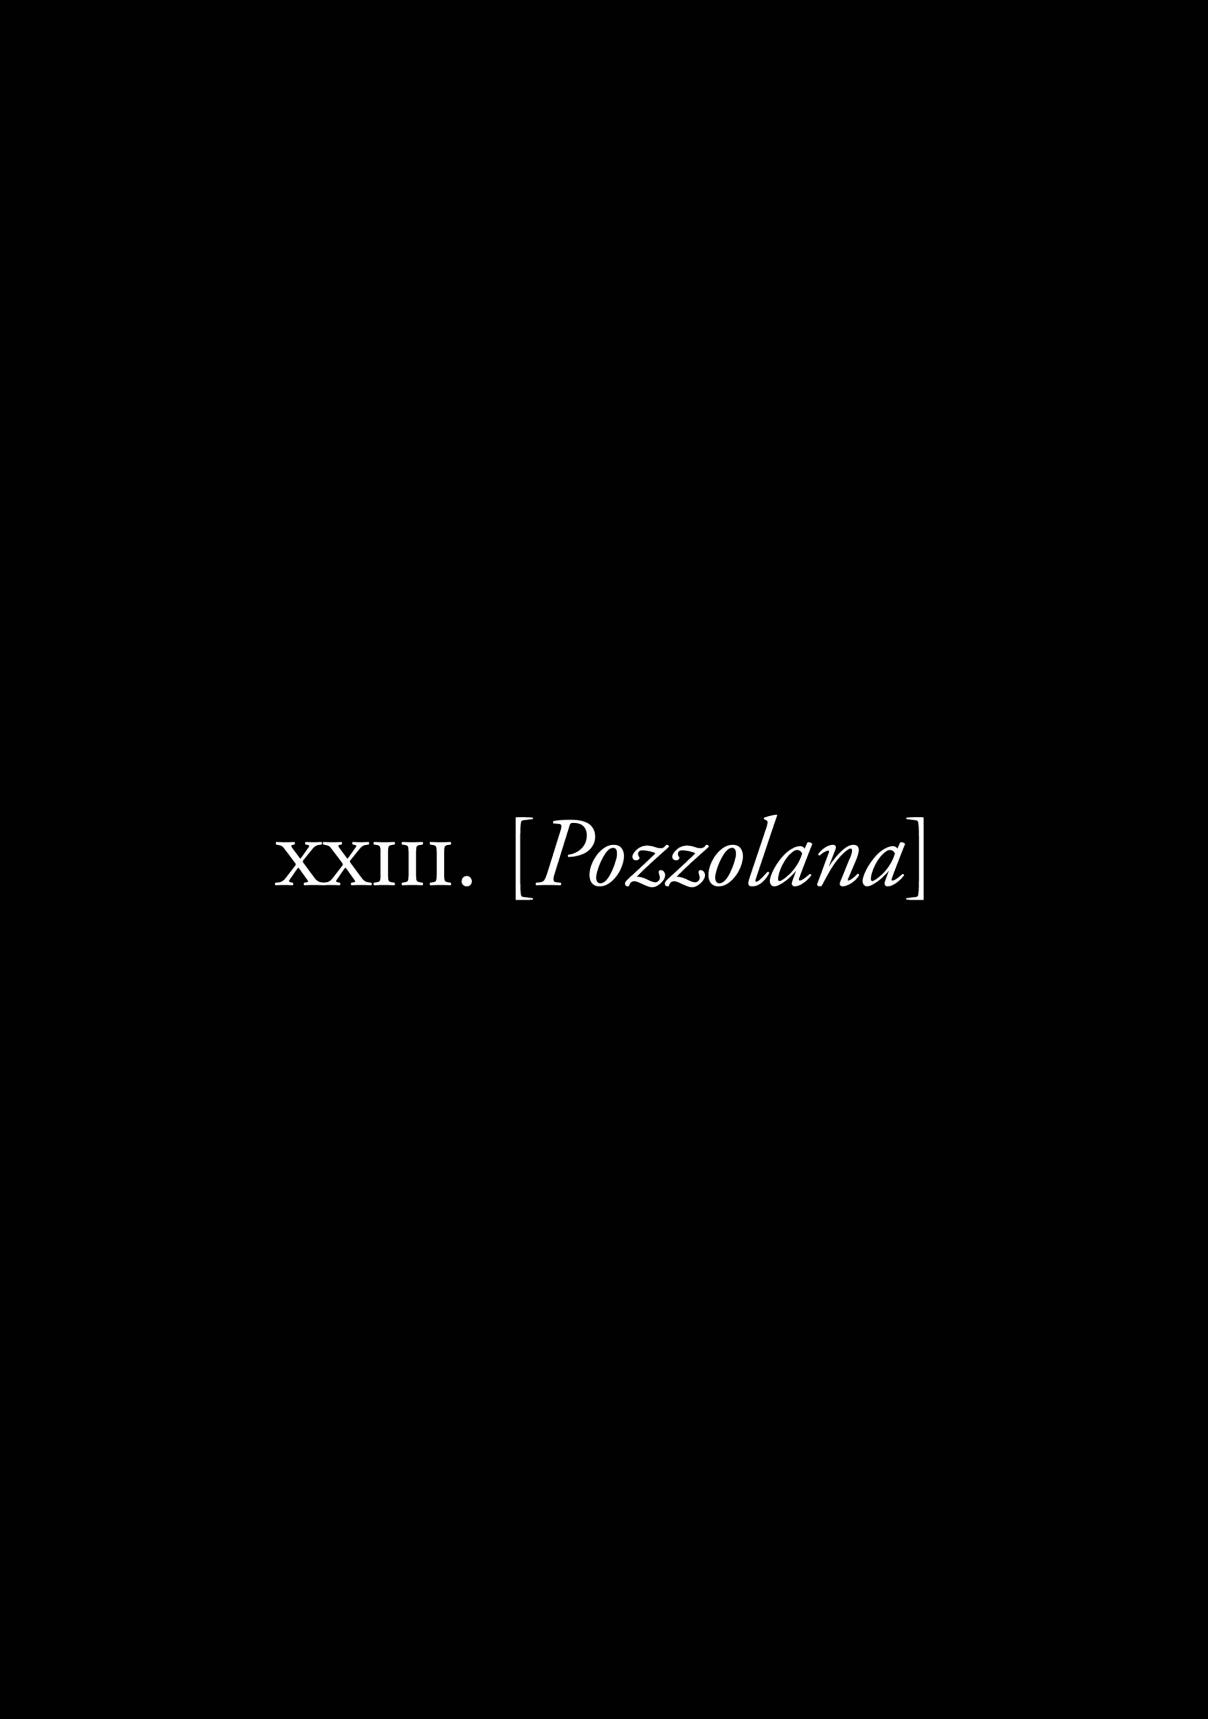 Plinivs Vol. 4 Ch. 23 Pozzolana